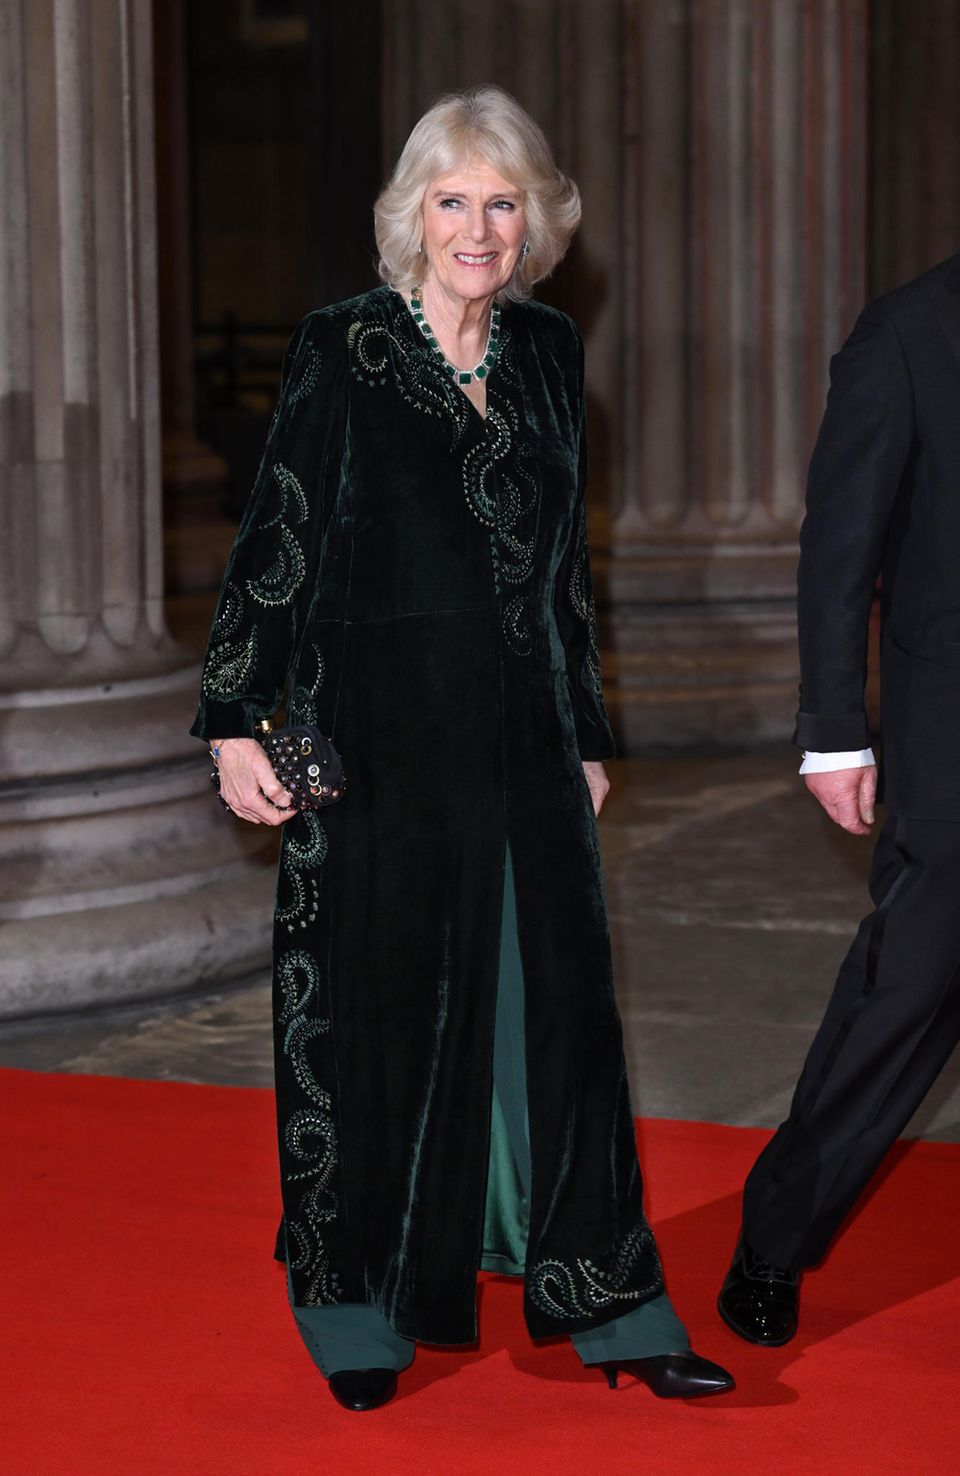 Herzogin Camilla strahlt in einem dunkelgrünen Gesamtlook – inclusief passendem Schmuck.